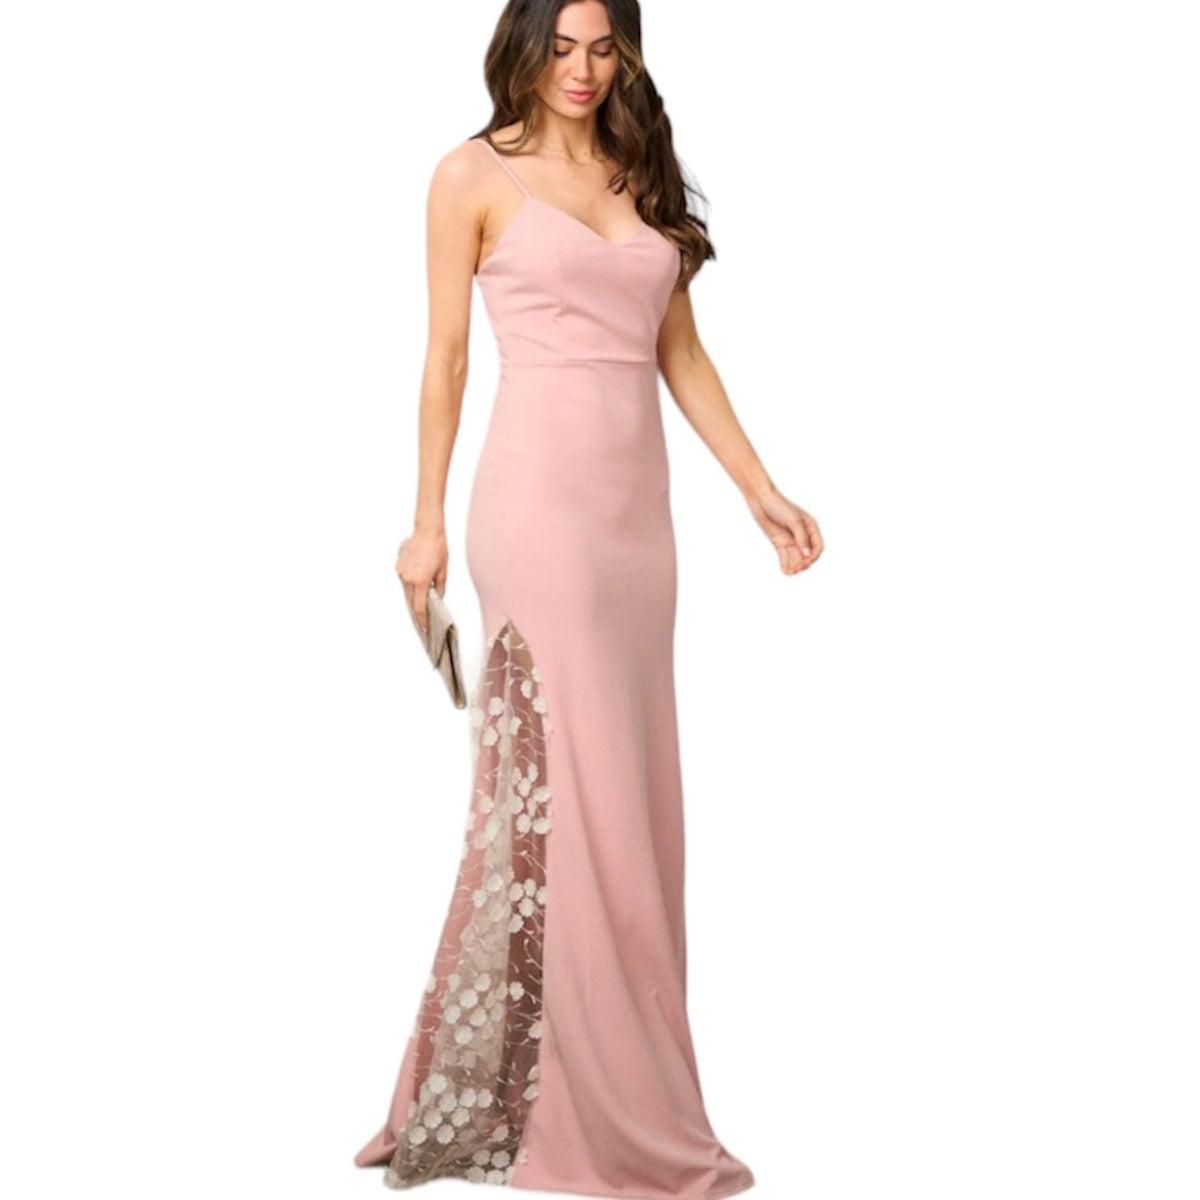 Cette magnifique robe maxi rose est parfaite pour toutes occasions spéciales telles qu'un bal, un gala, une soirée ou même un mariage. Son design élégant et sa couleur rose féminine en font un choix idéal pour se démarquer avec style. Fabriquée avec des matériaux de qualité, vous serez à la fois confortable et chic toute la soirée.